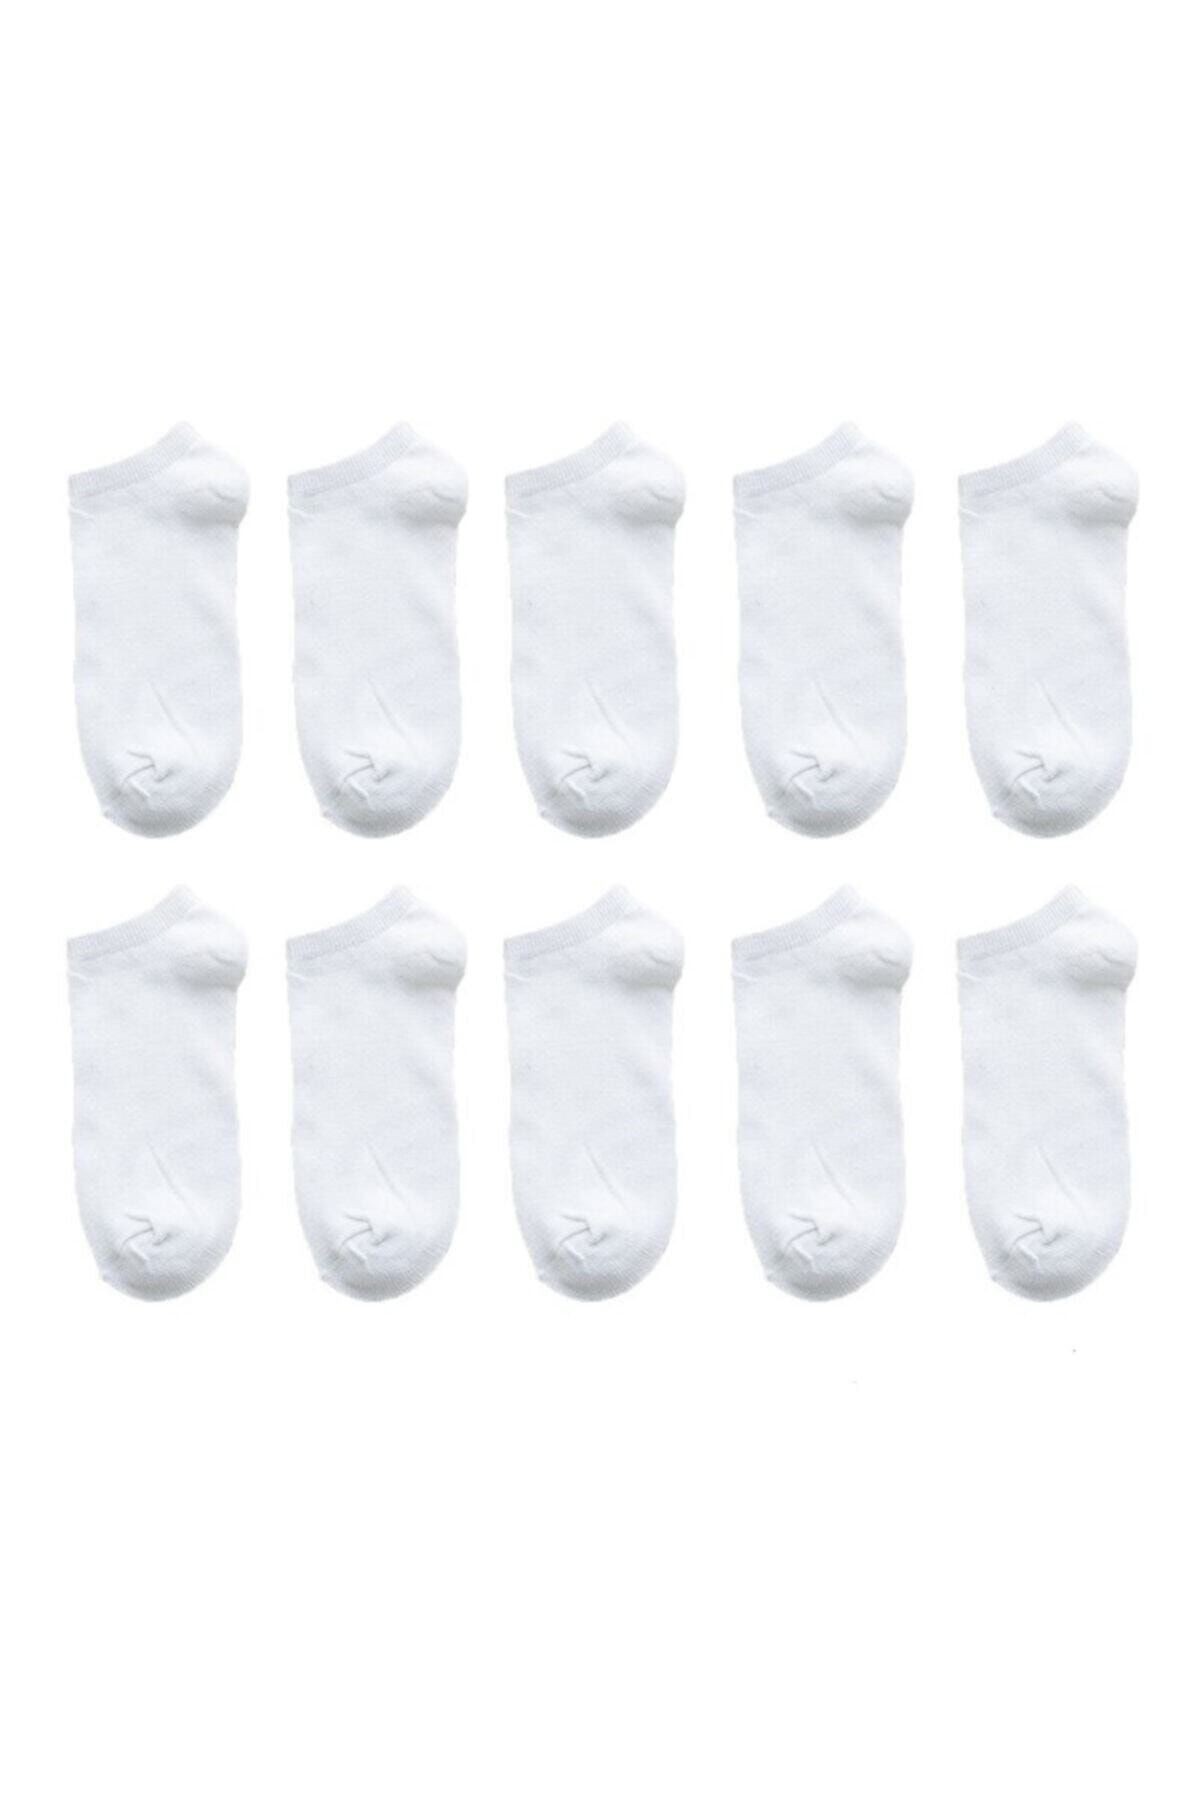 Zirve Unisex 10 Çift Koton Ekonomik Beyaz Renk Patik Çorap